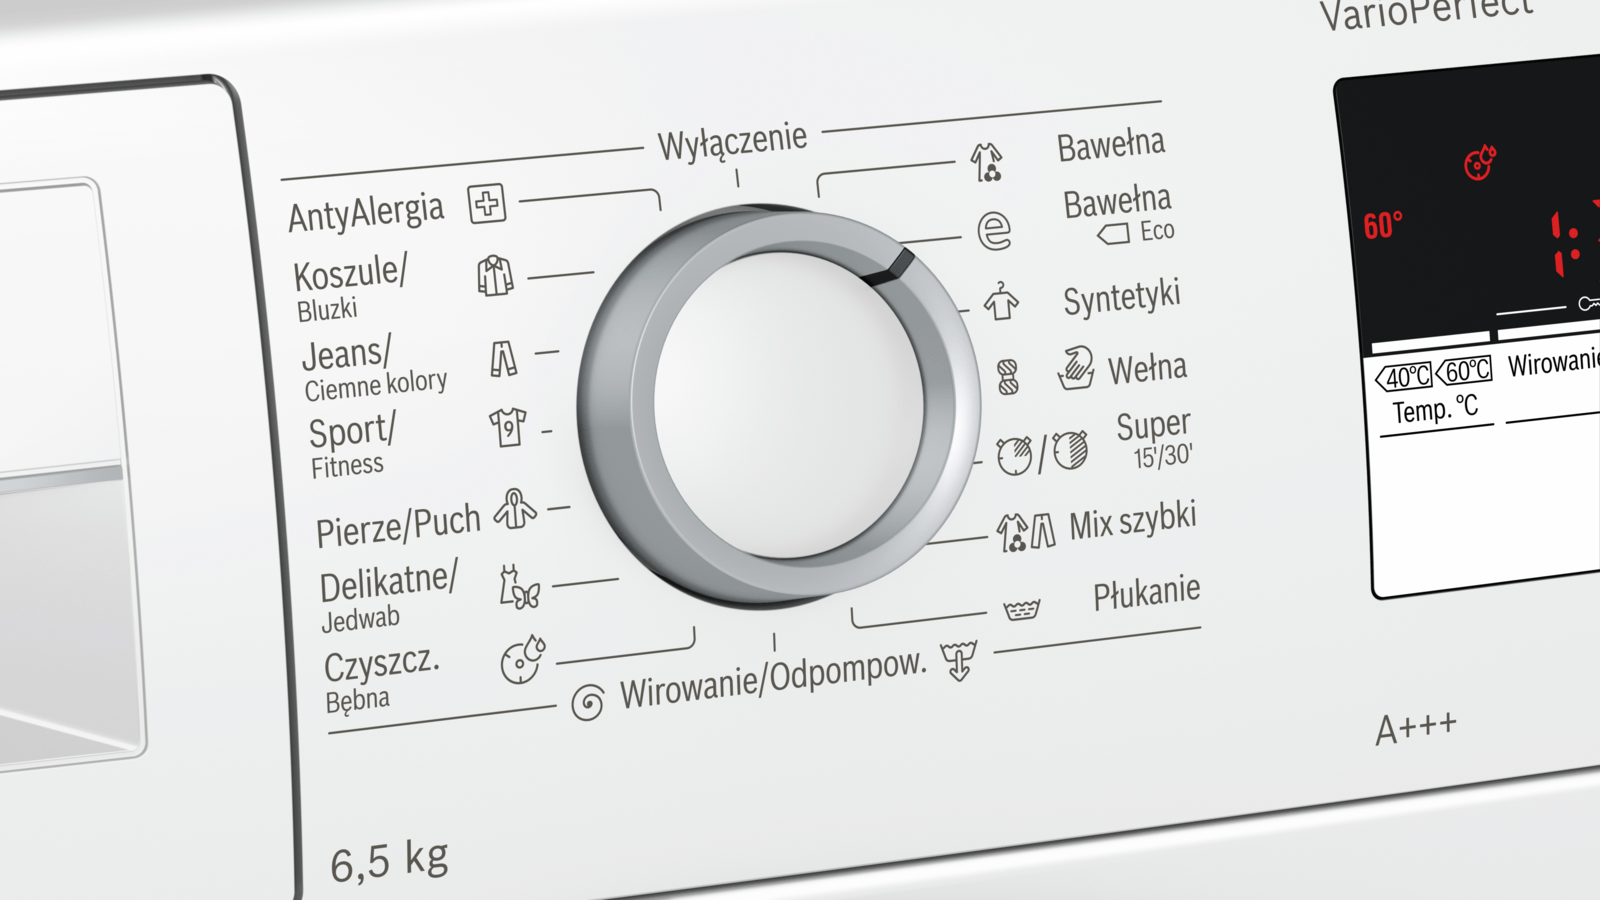 Symbole na pralce - znaczenie dodatkowych funkcji